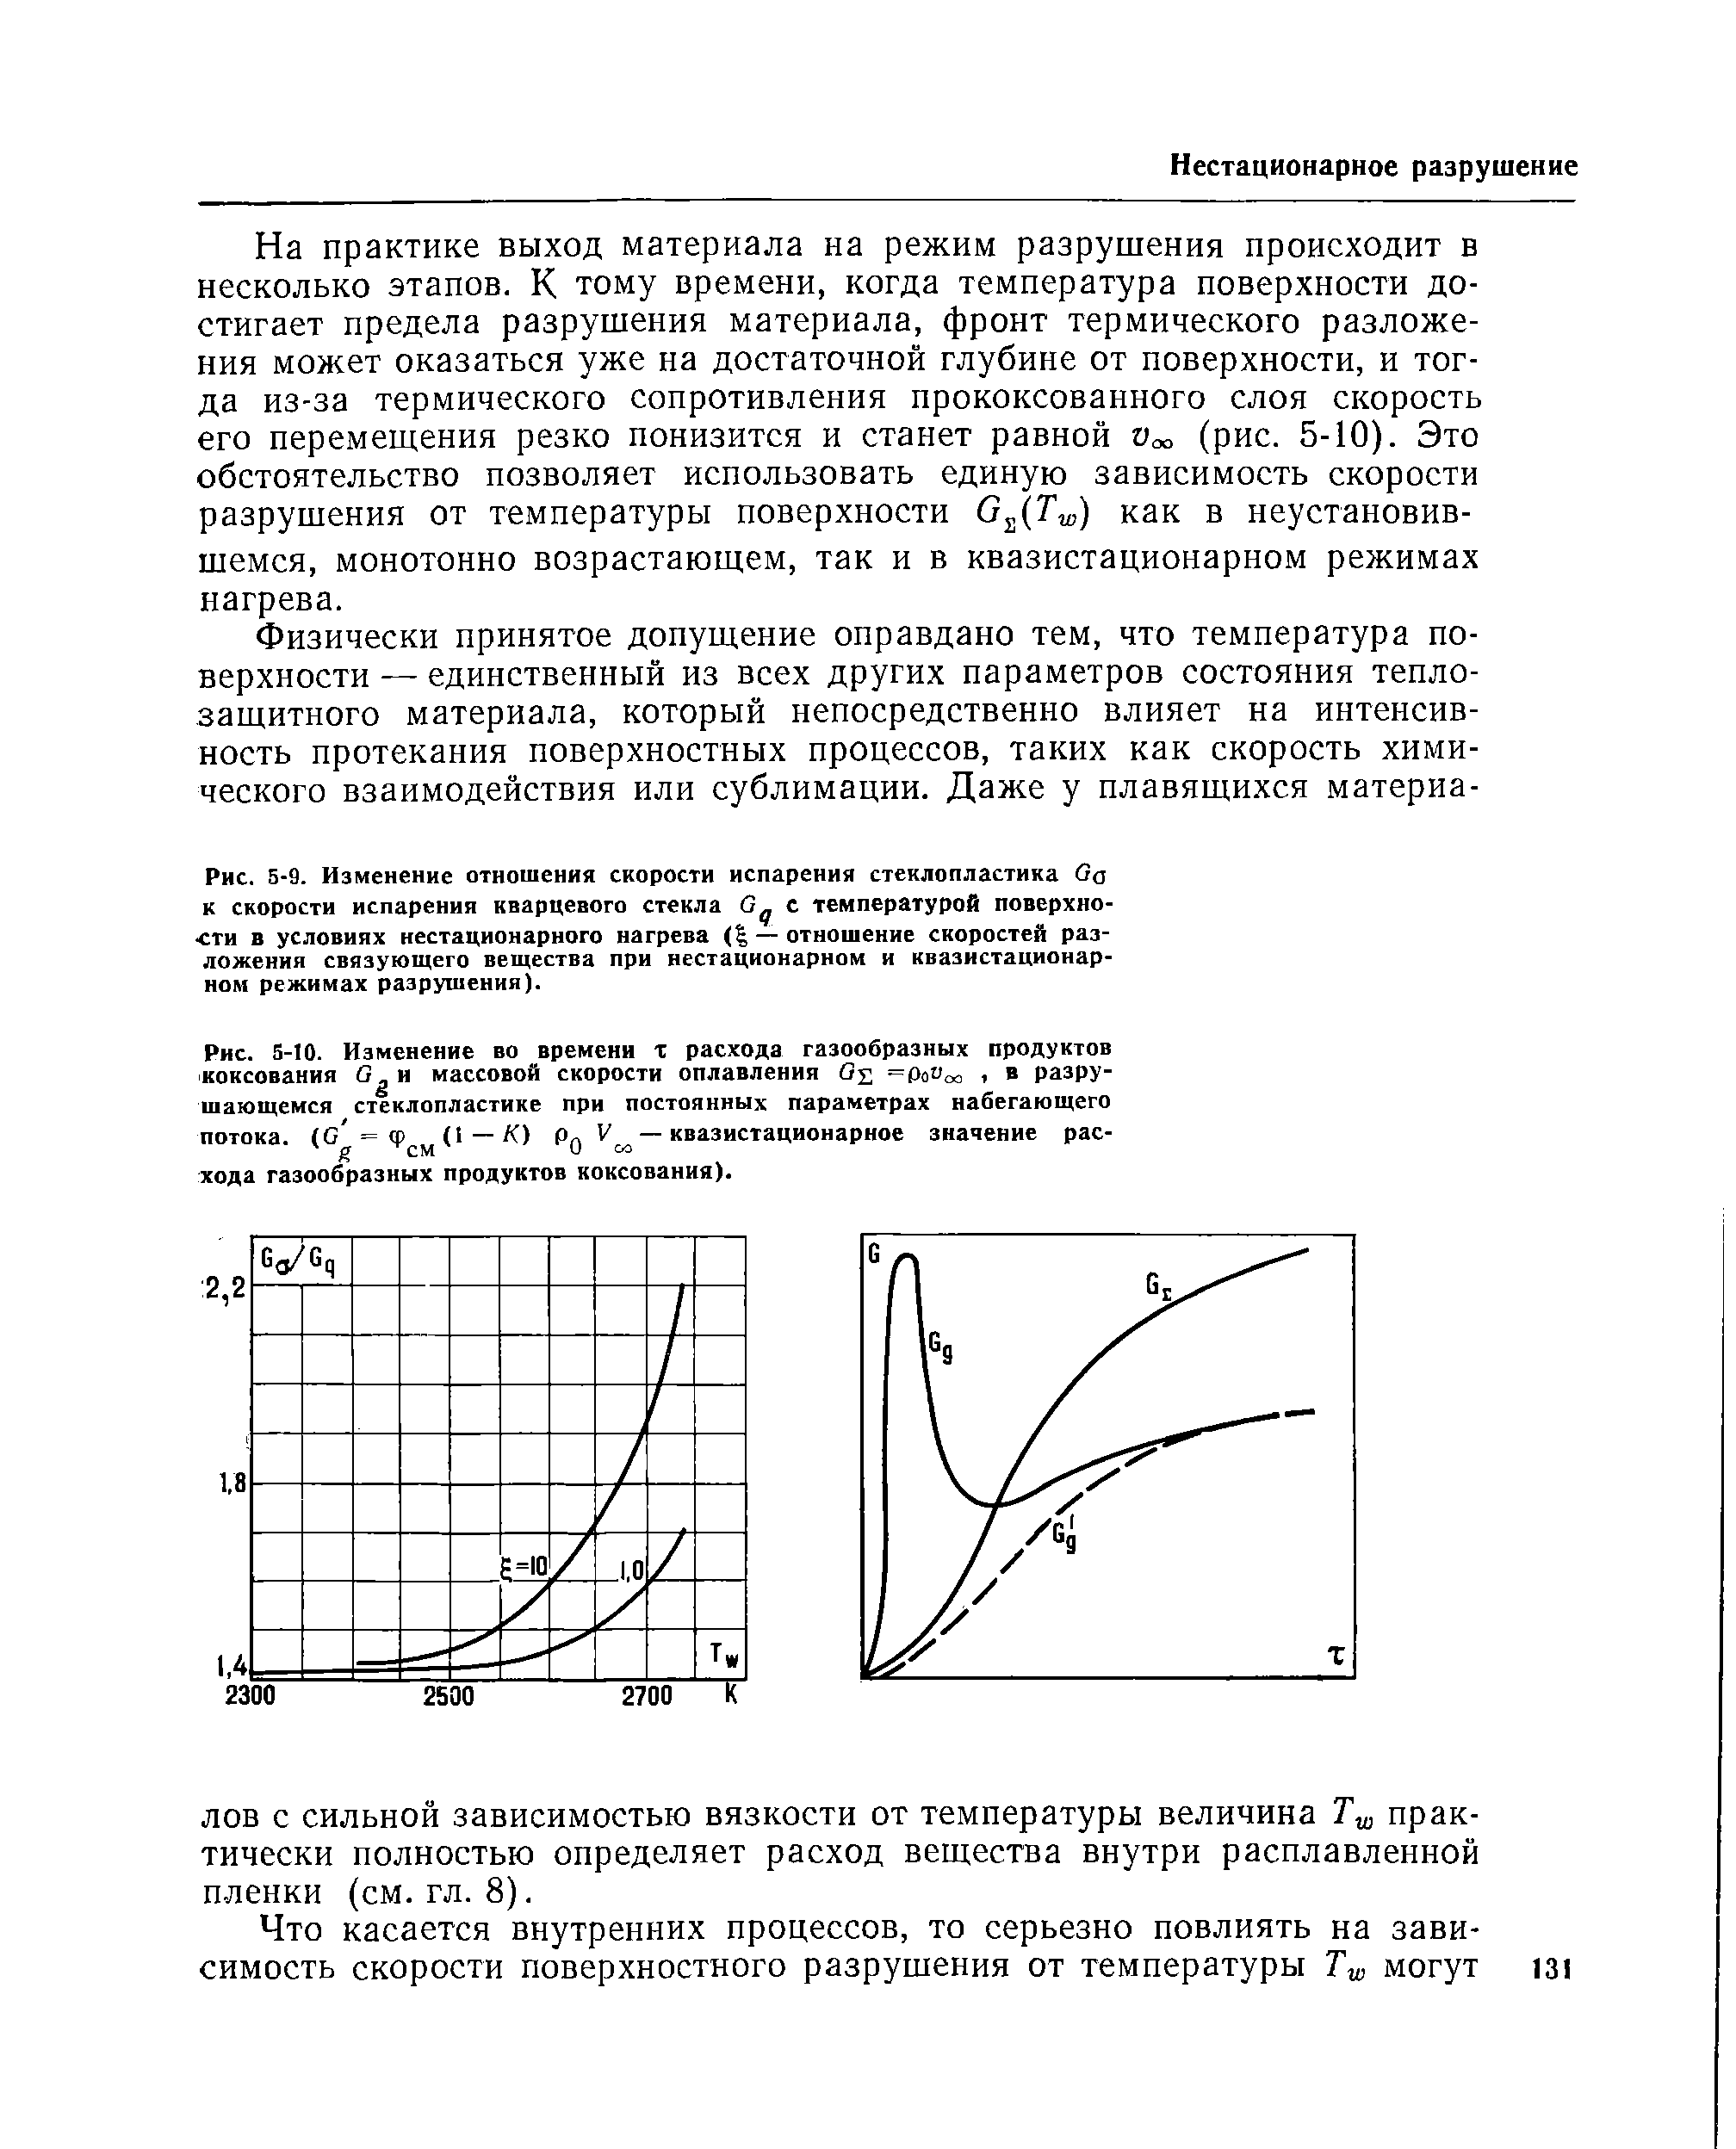 Рис. S-IO. Изменение во времени х расхода газообразных продуктов коксования G и <a href="/info/198279">массовой скорости</a> оплавления 0 Pav a, в разрушающемся стеклопластике при постоянных параметрах набегающего потока, (с — К) Рд — квазистационарное значение рас-
